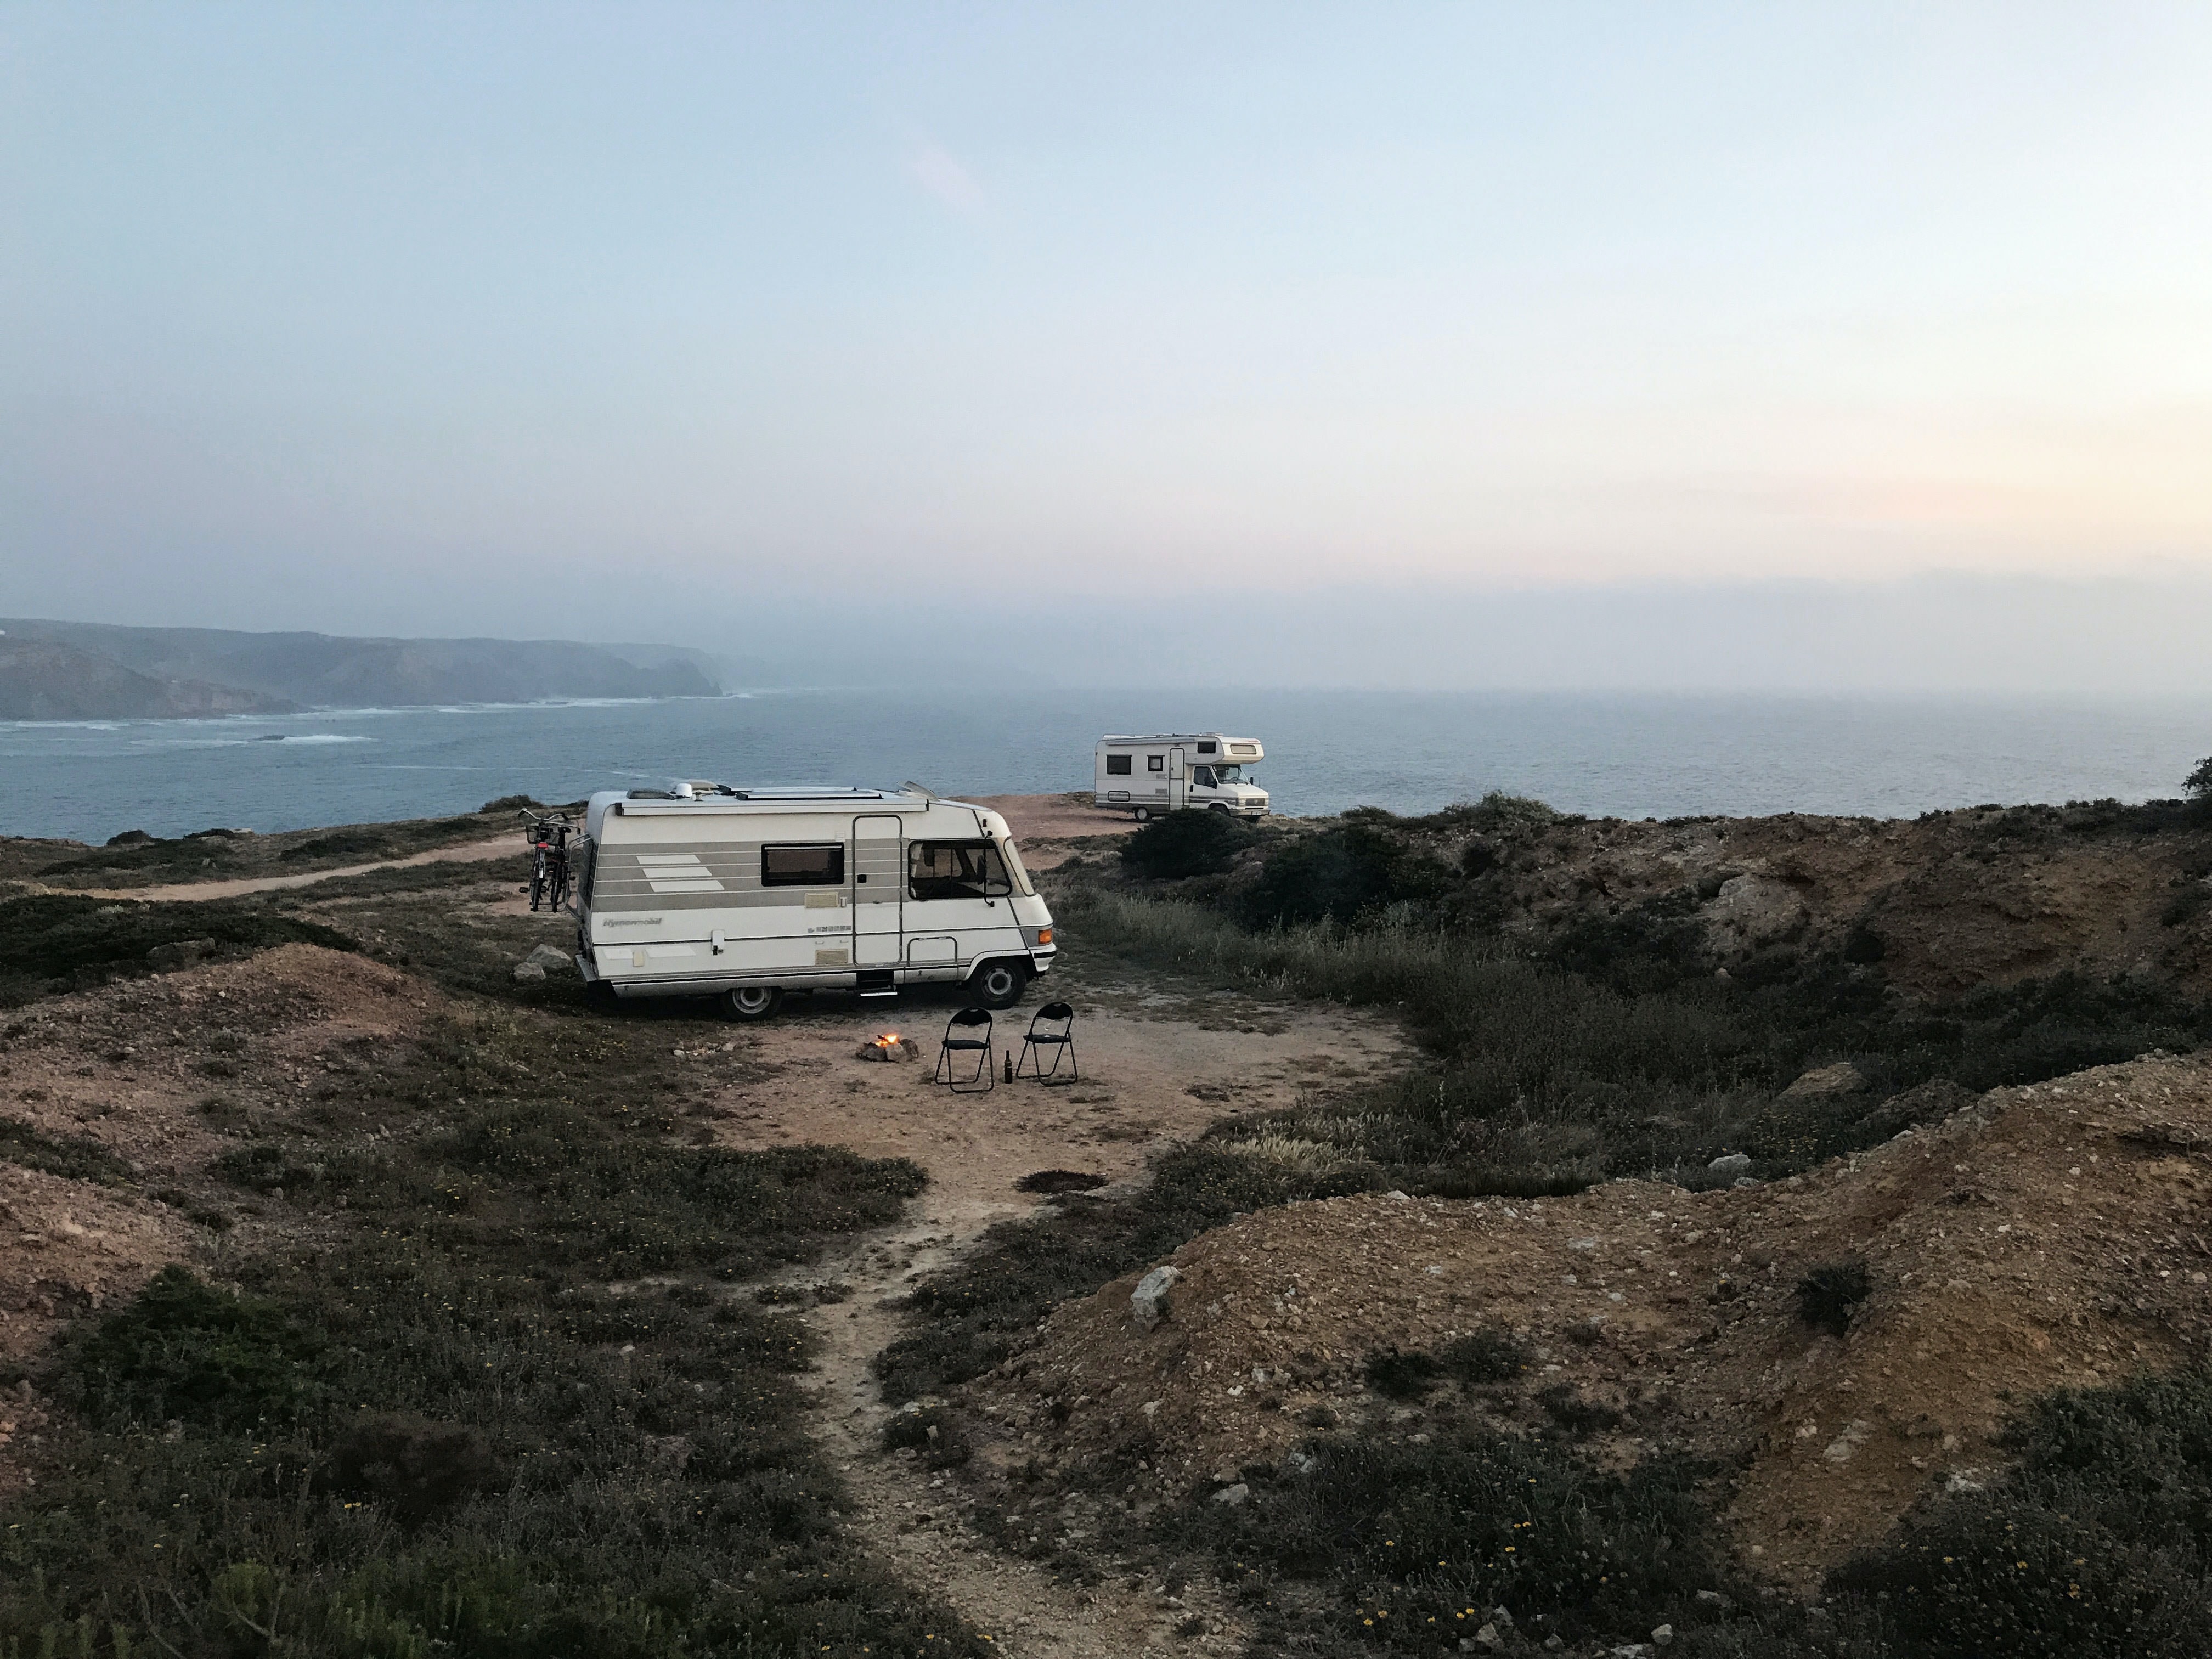 Nyd ferien i en brugt campingvogn